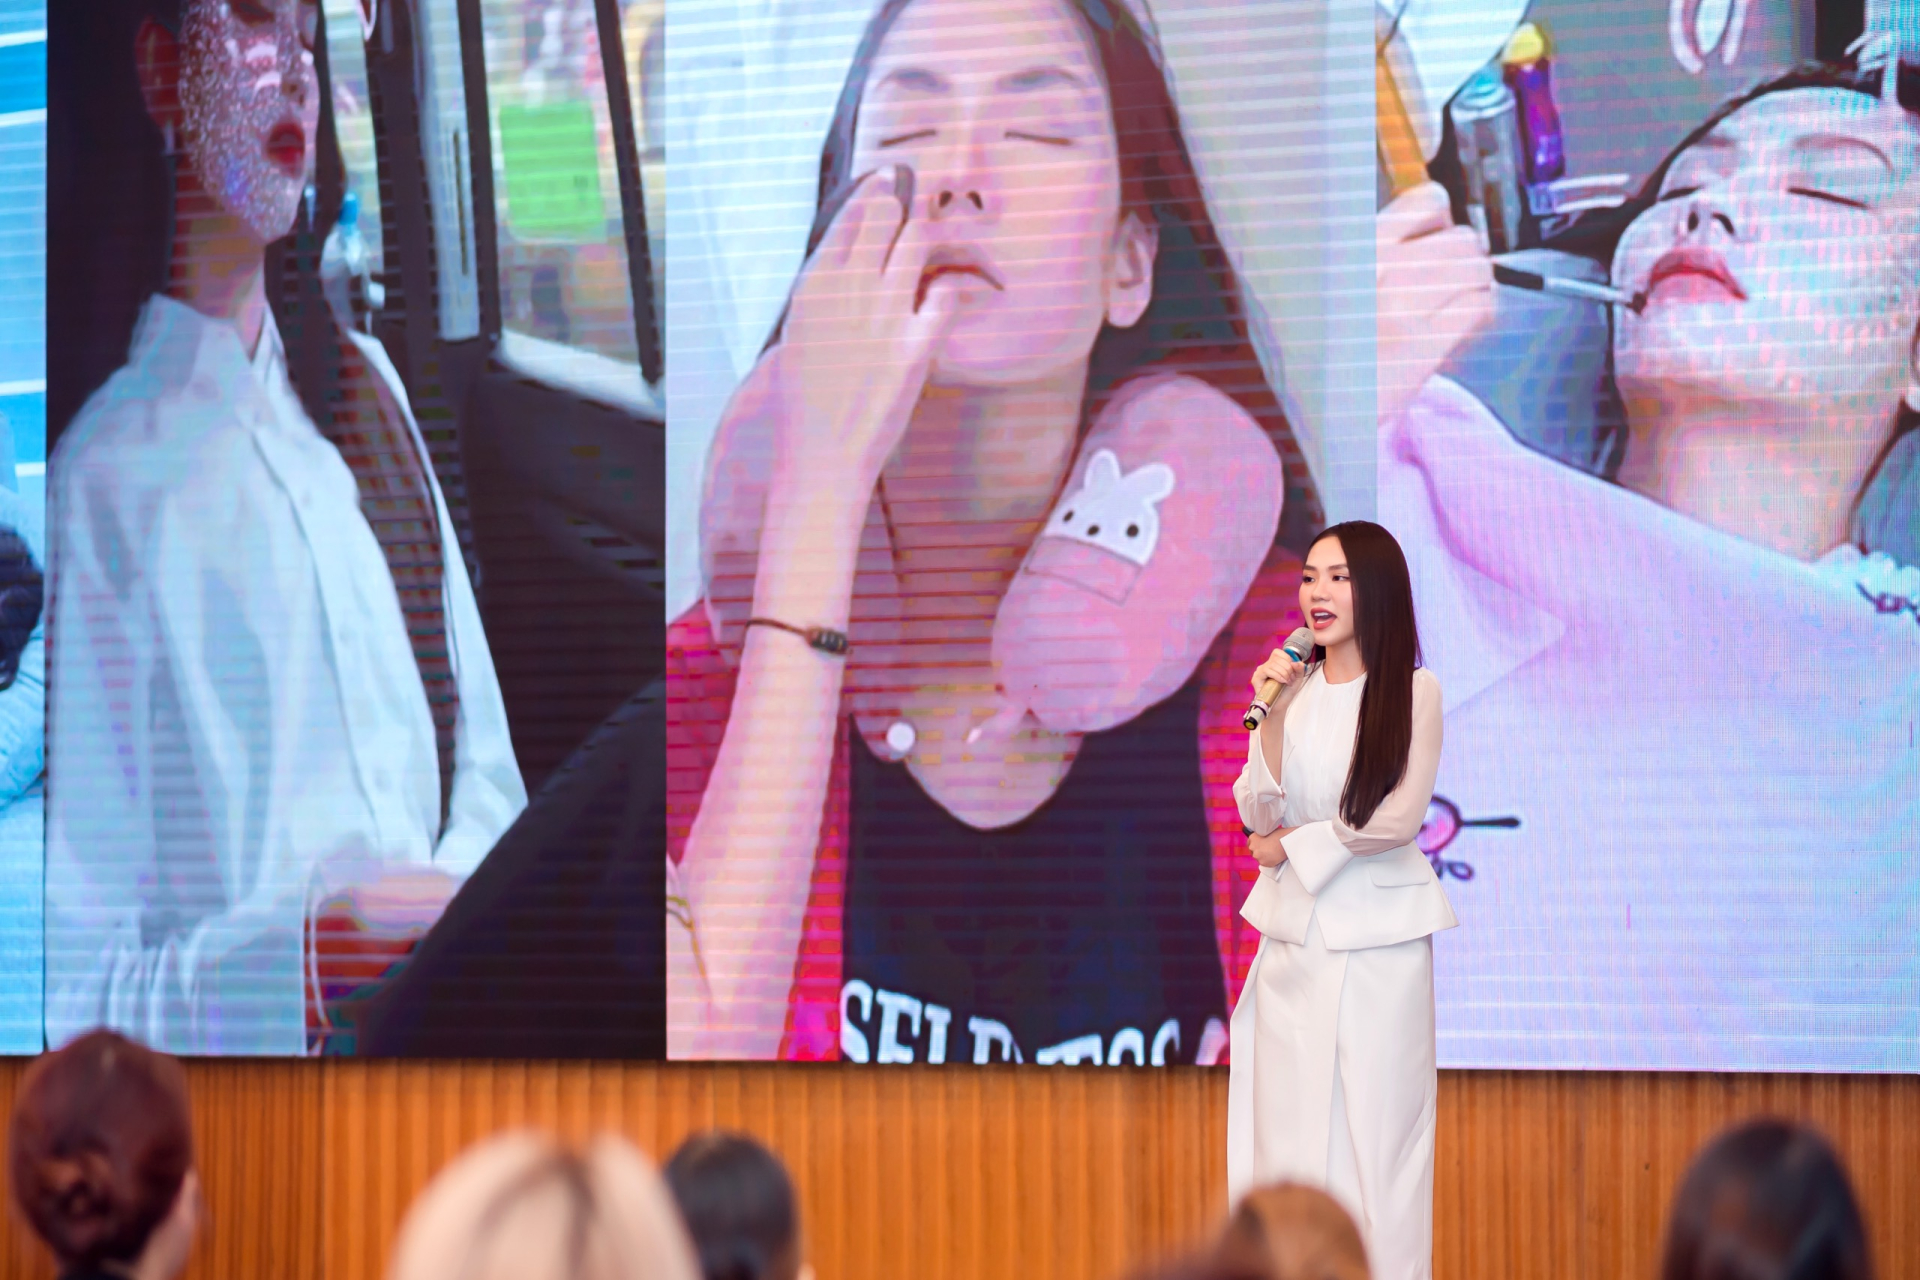 Hoa hậu Mai Phương thừa nhận từng tuyệt vọng khi gặp nhiều biến cố - ảnh 3